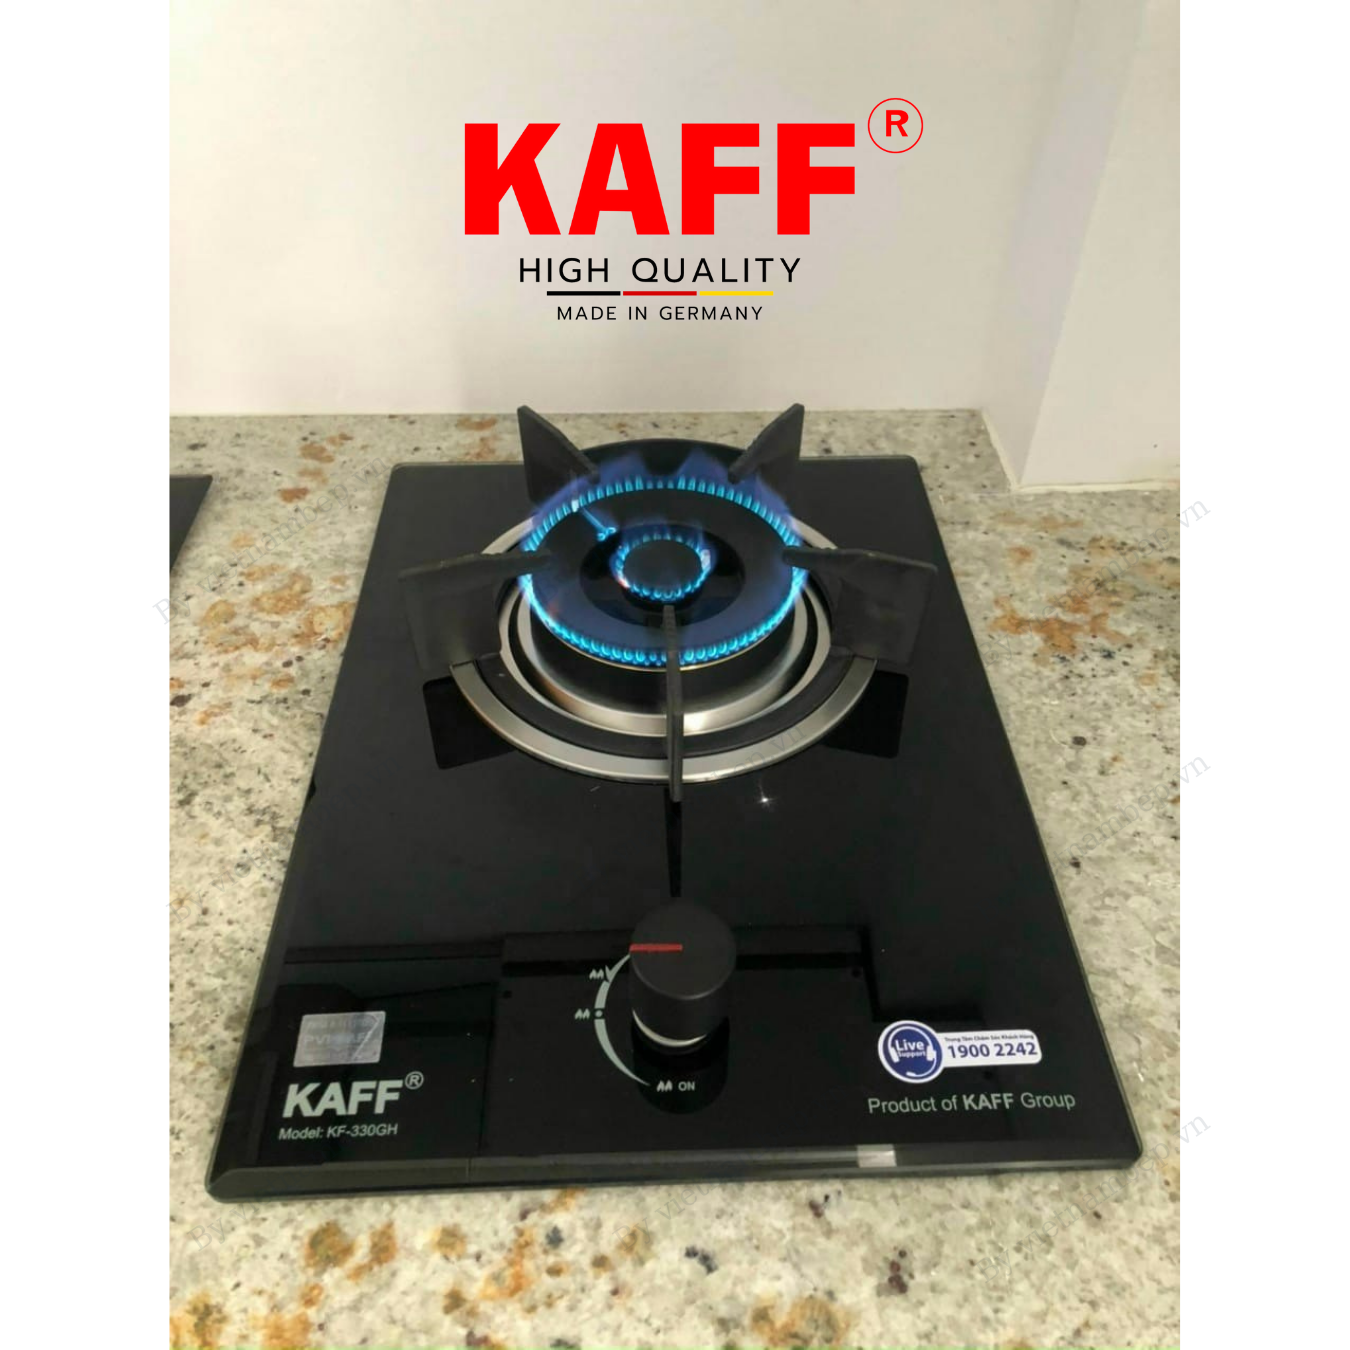 Bộ Bếp ga đơn KAFF KF- 330GH bao gồm: Bếp ga + chảo chống dính cao cấp + bộ van ga - Hàng chính hãng